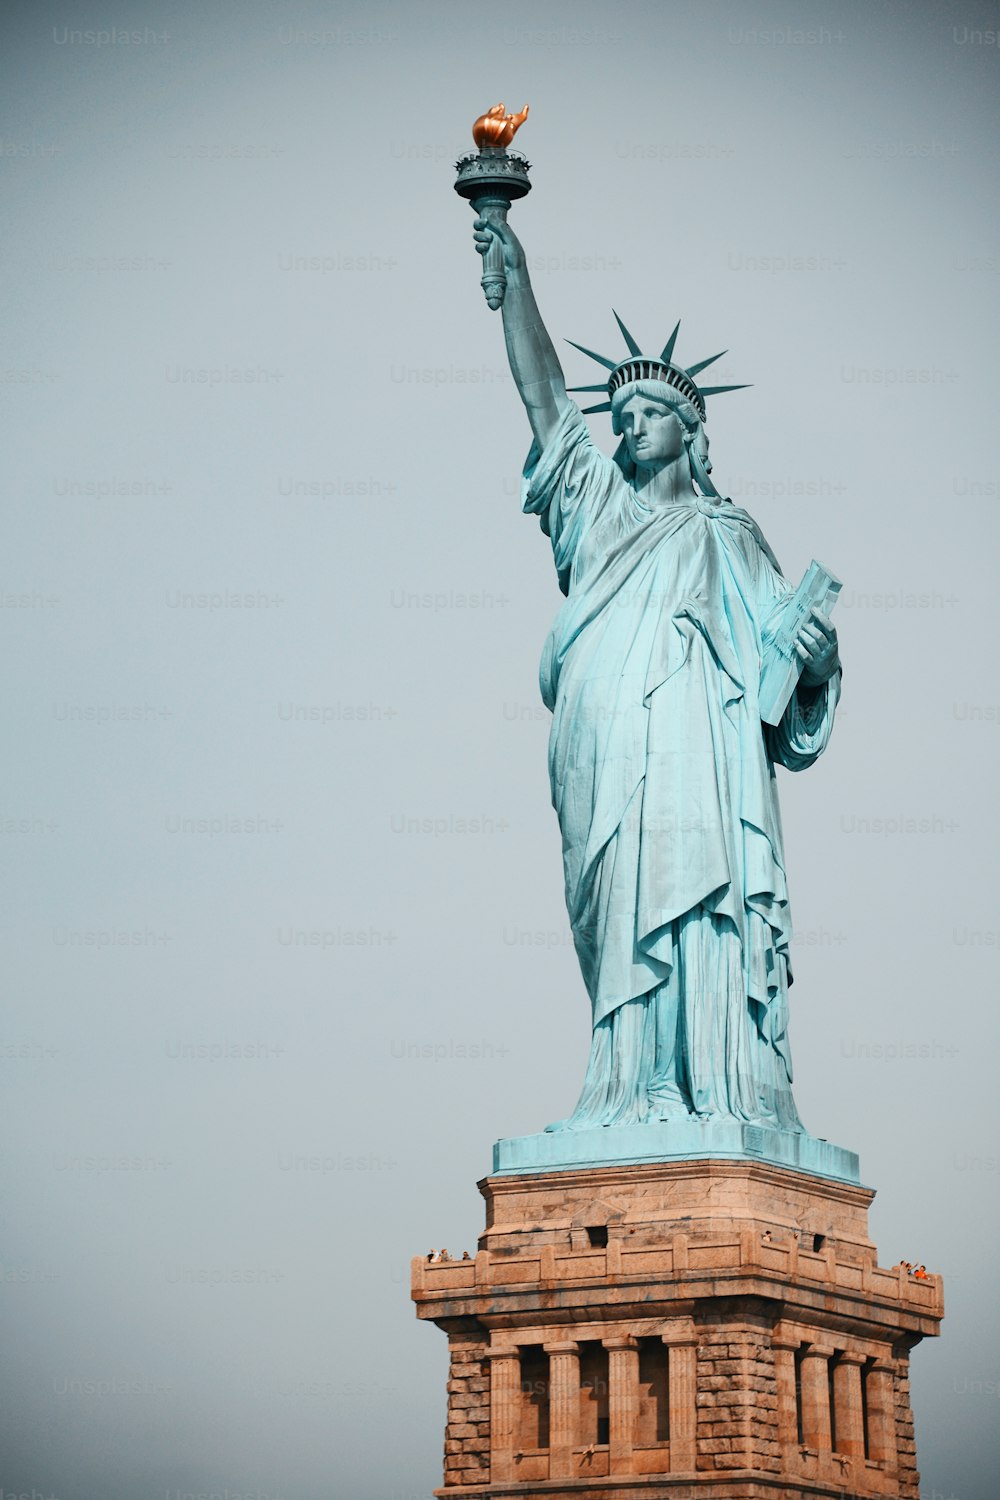 La Statue de la Liberté est représentée sur un ciel gris